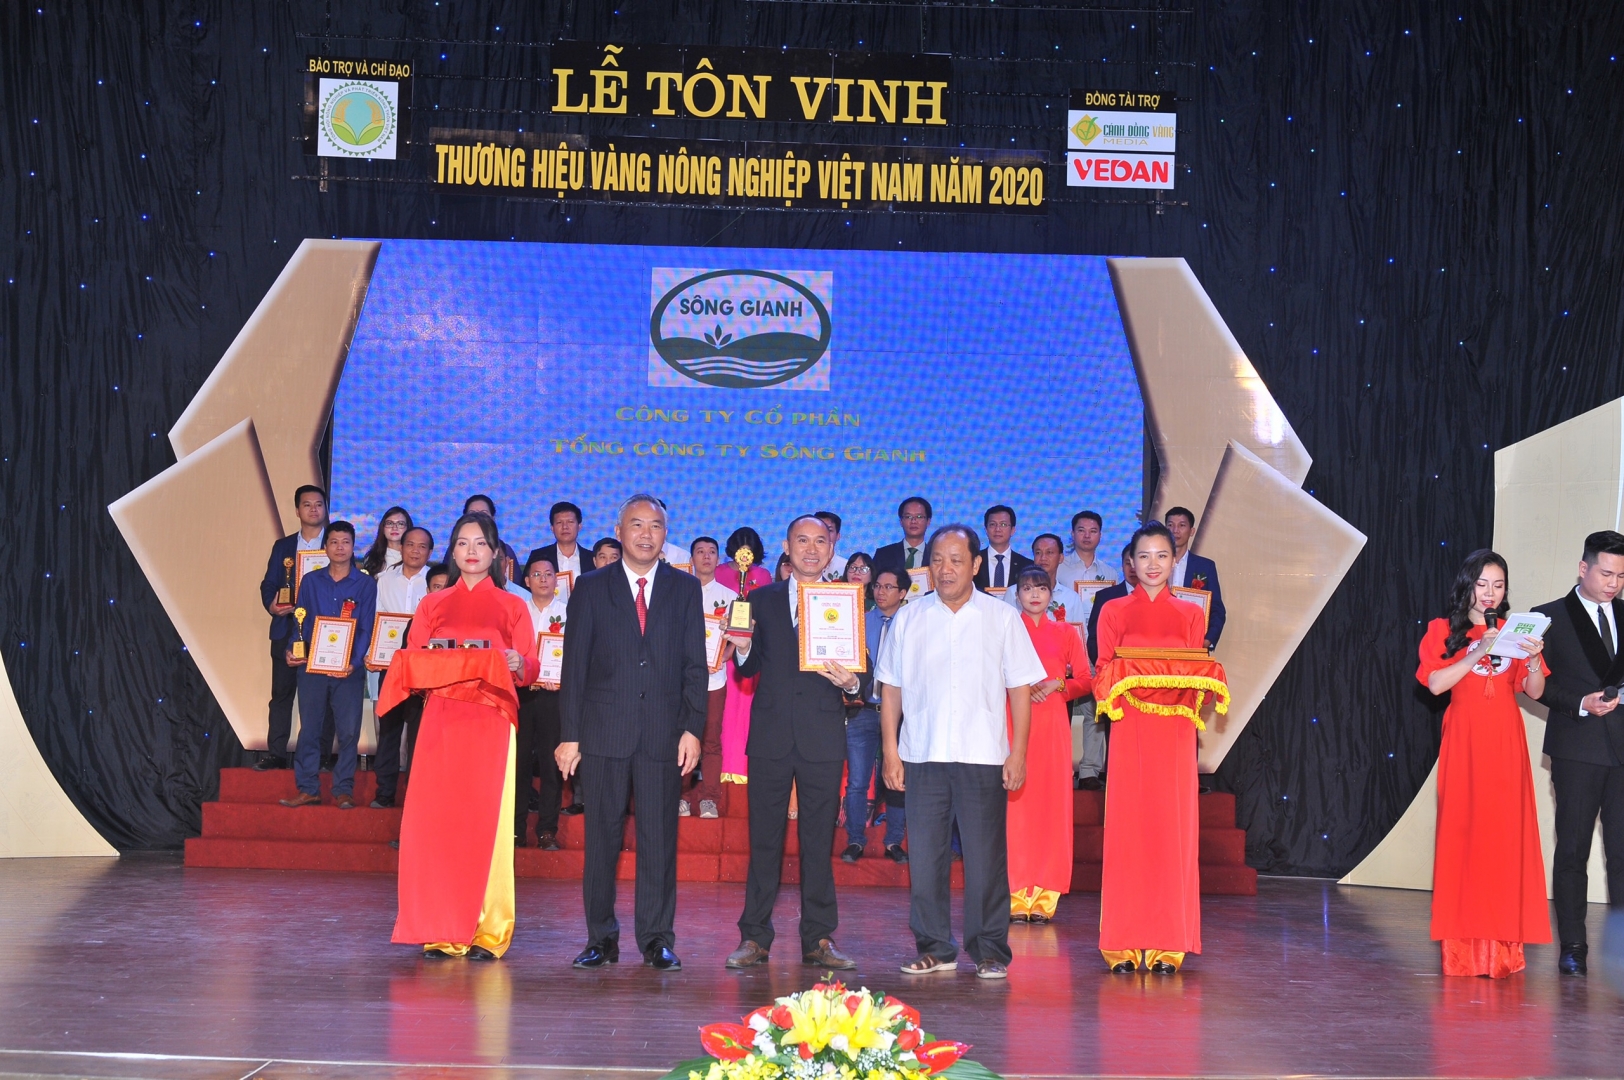 Tổng công ty Sông Gianh vinh dự nhận giải thưởng Thương hiệu vàng Nông nghiệp Việt Nam 2020